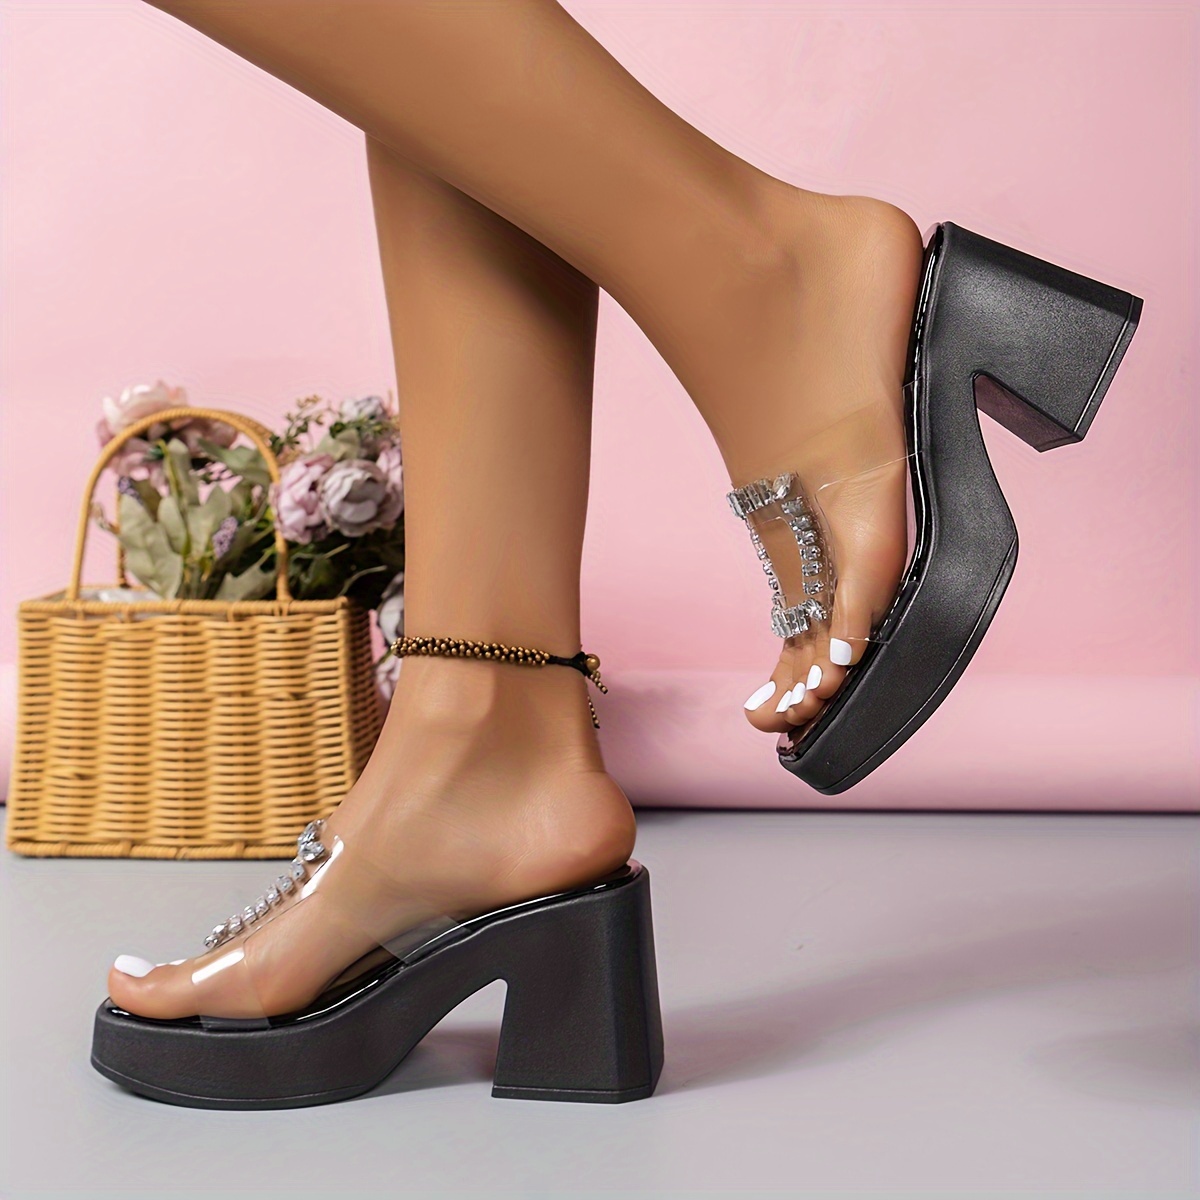 Купить женские босоножки на каблуке в интернет магазине вторсырье-м.рф